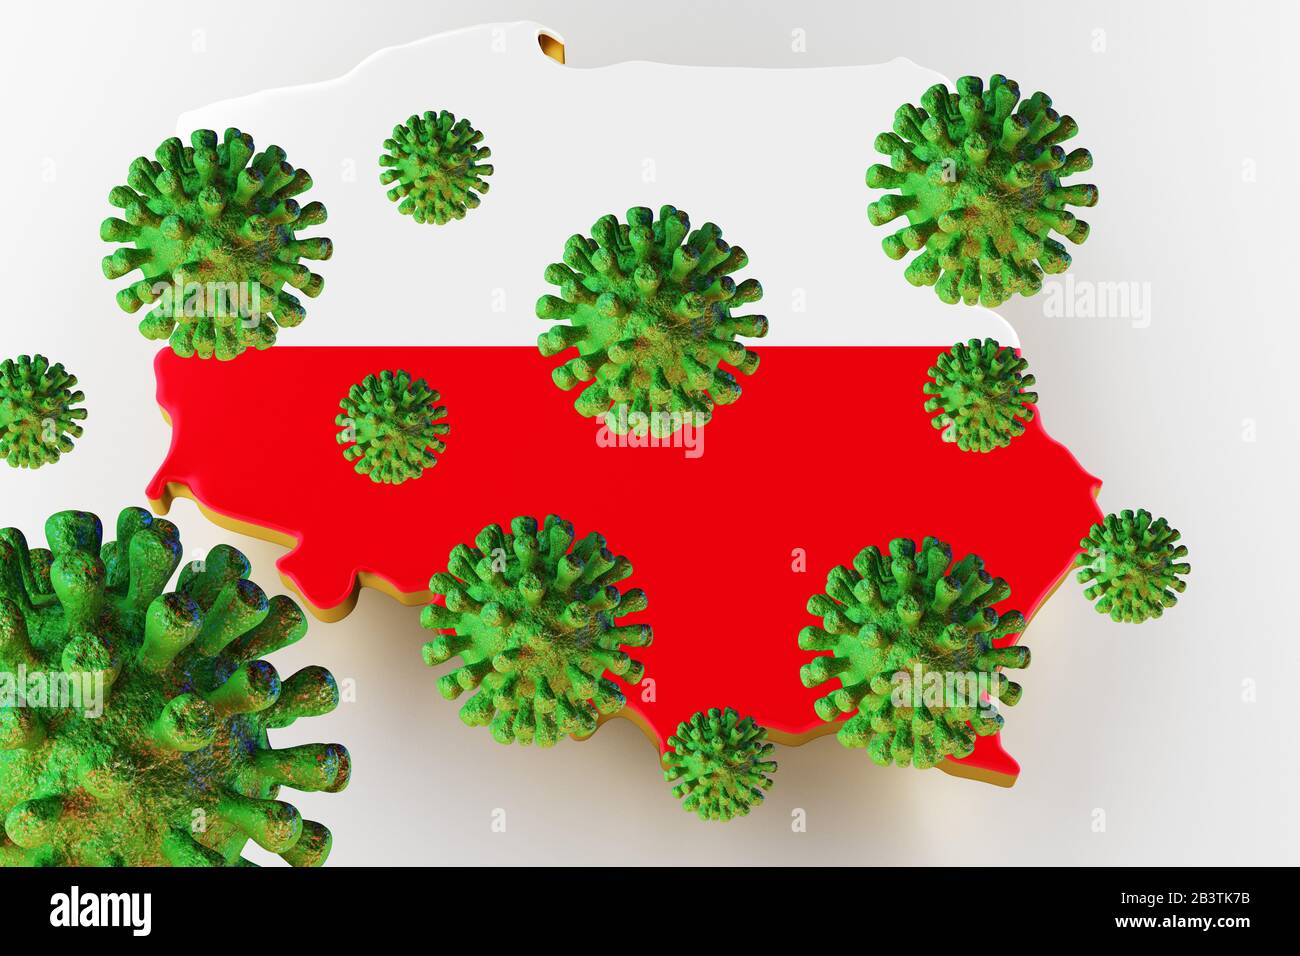 Virus 2019-ncov, Flur ou Coronavirus avec la carte de la Pologne. Coronavirus de chine. Rendu tridimensionnel Banque D'Images